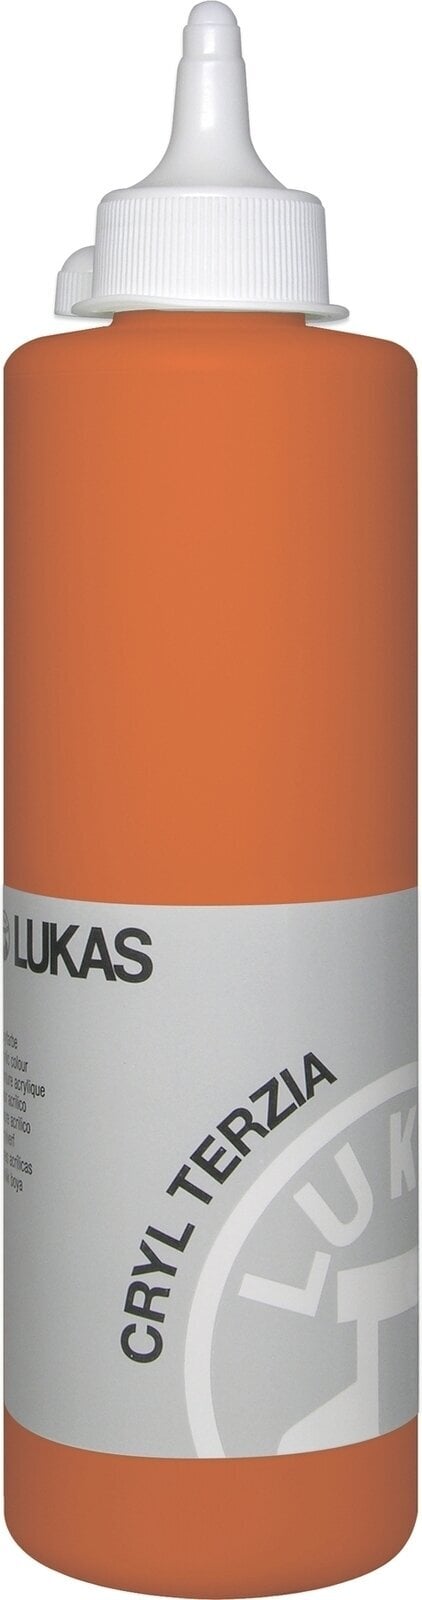 Akryylimaali Lukas Cryl Terzia Akryylimaali 500 ml Cadmium Orange Hue